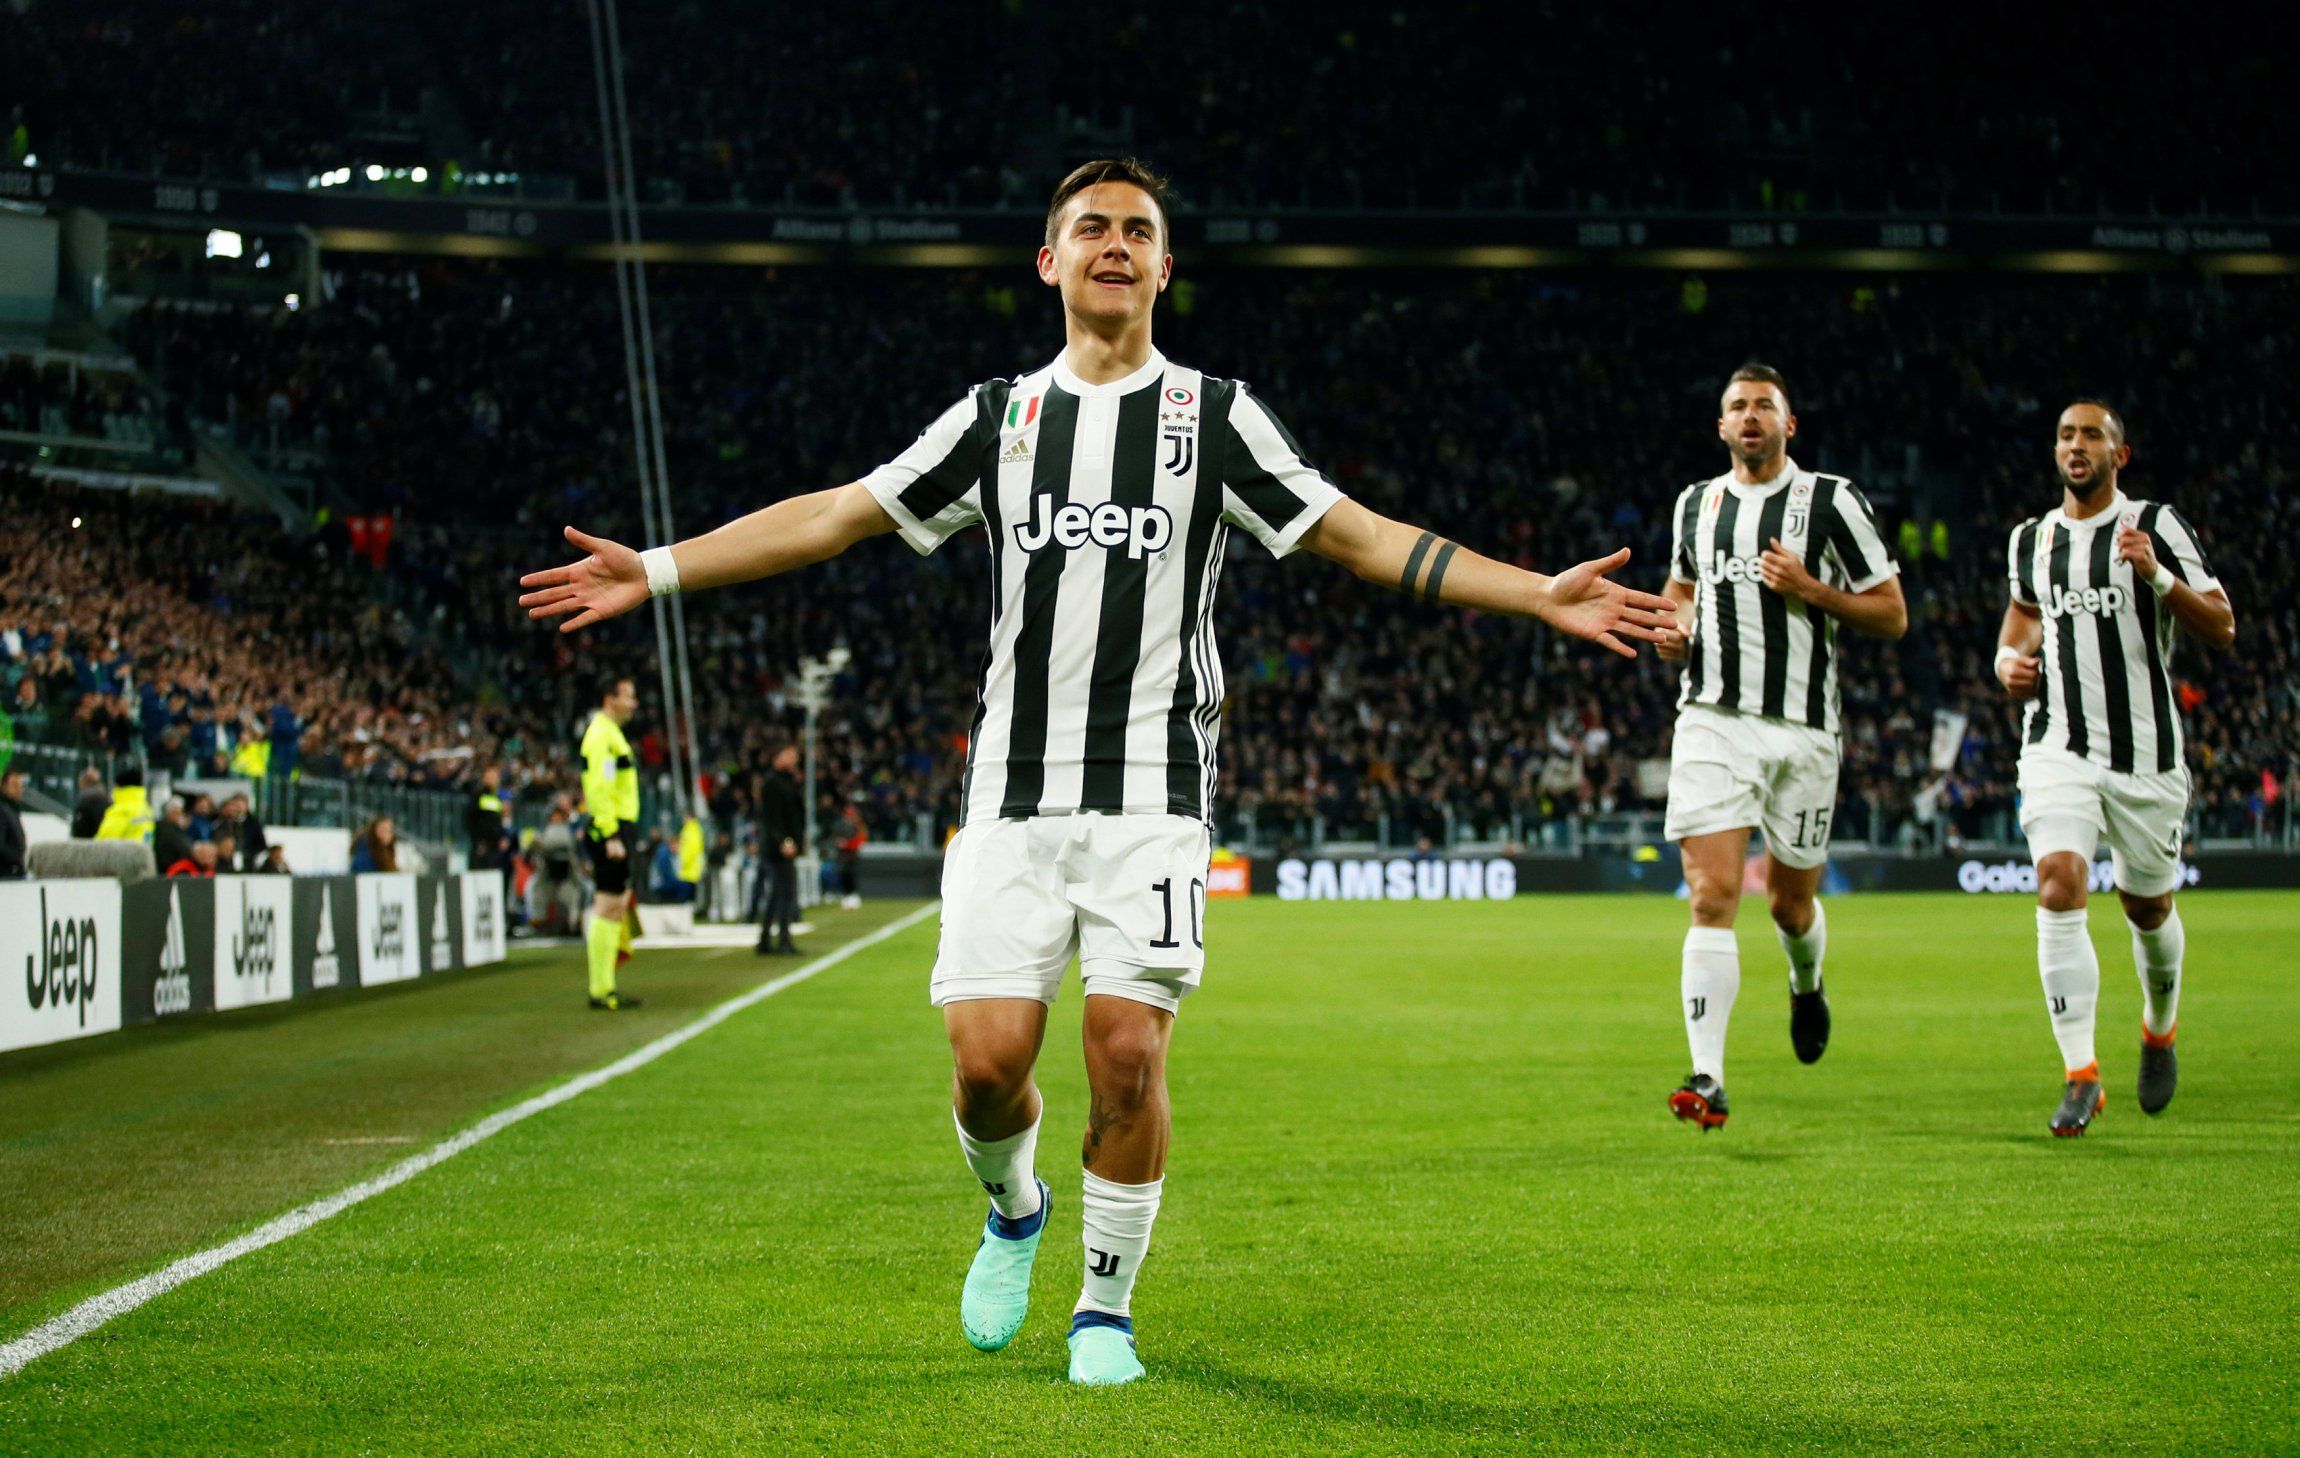 Paulo Dybala celebrates scoring for Juventus